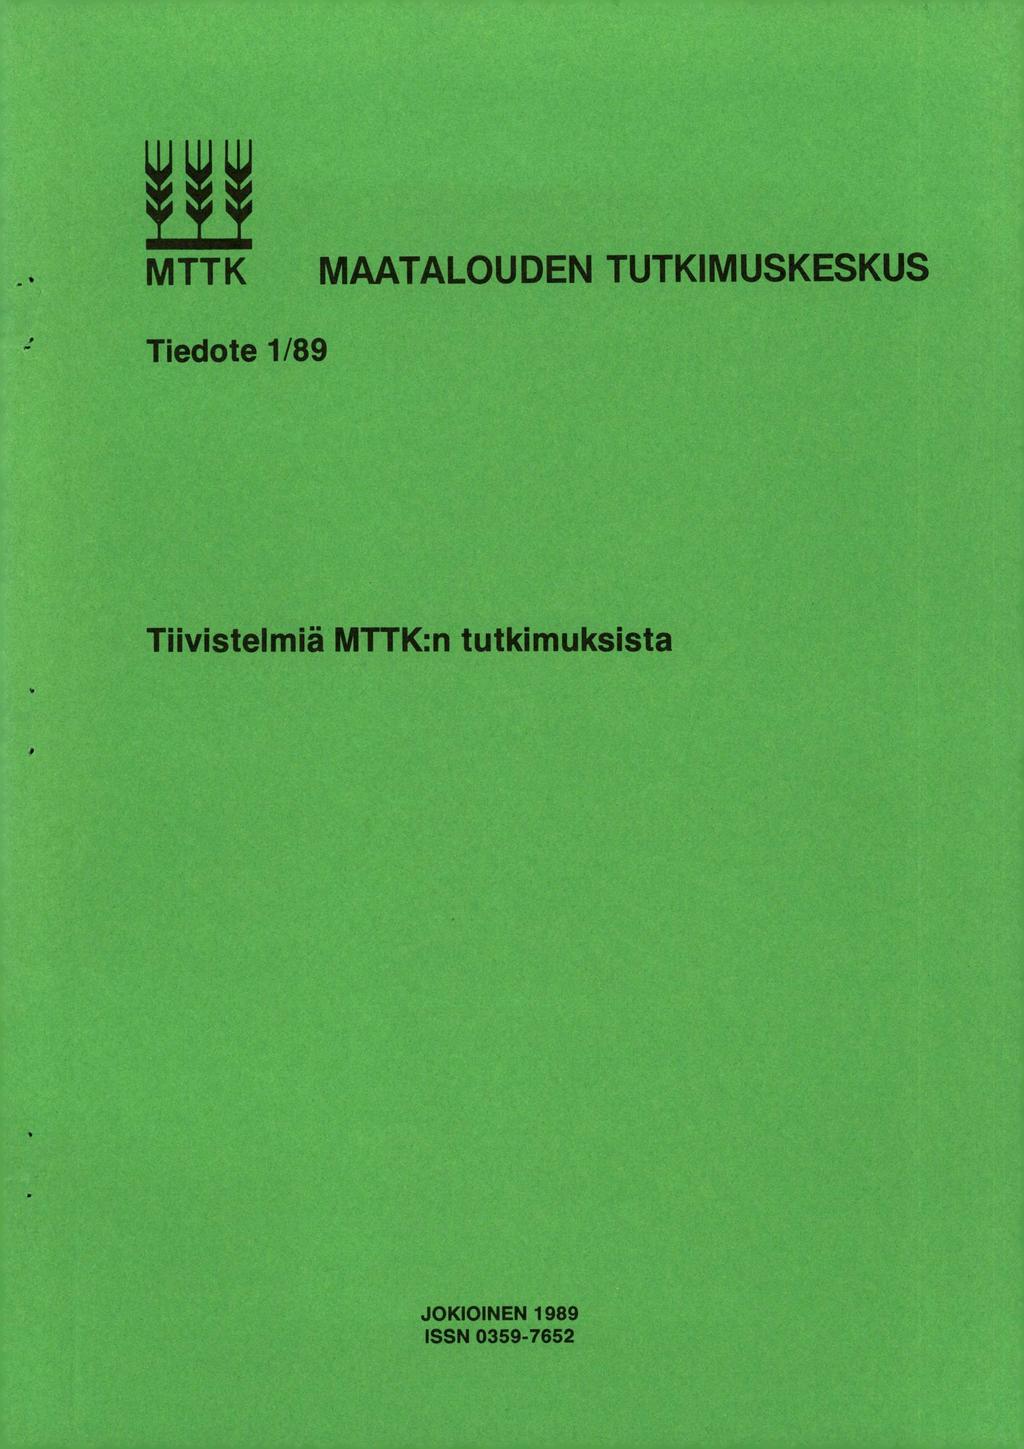 . MTTK MAATALOUDEN TUTKIMUSKESKUS, Tiedote 1/89